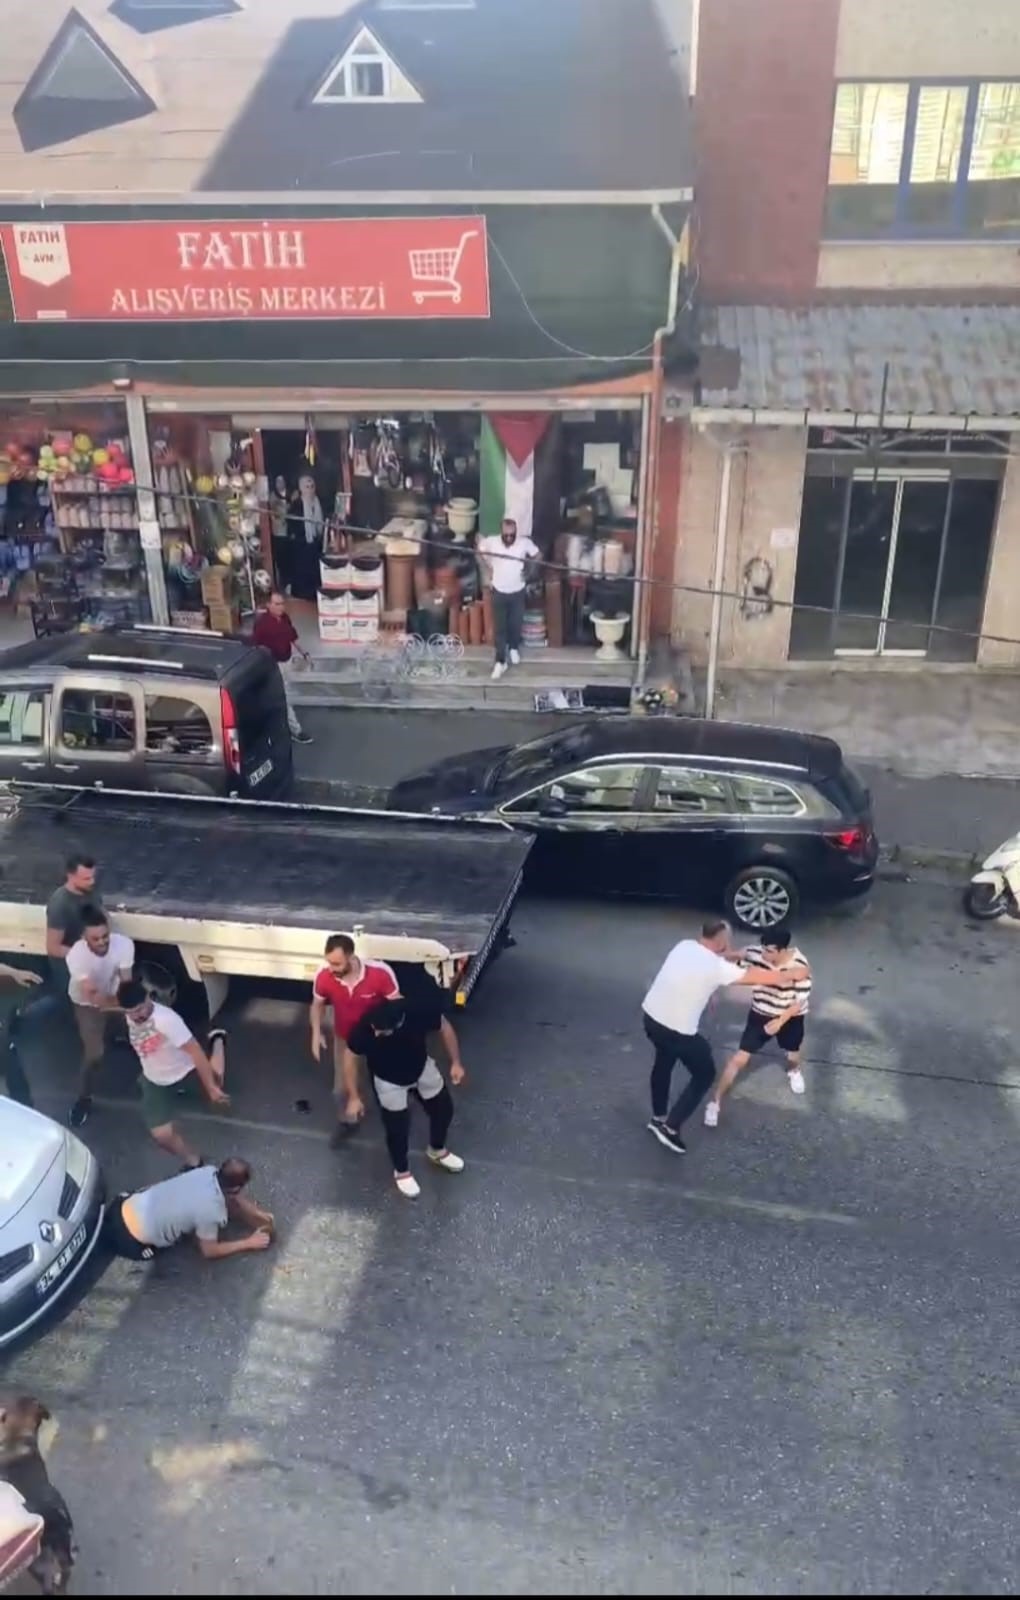 Beykoz'da iki sürücü arasında trafik nedeniyle başlayan tartışma, küfürlü kavgaya dönüştü. Sürücülerden biri, yere yatırılarak diğer sürücü ve yanındakiler tarafından tekmelendi. Tekmelenen sürücü başından yaralandı.